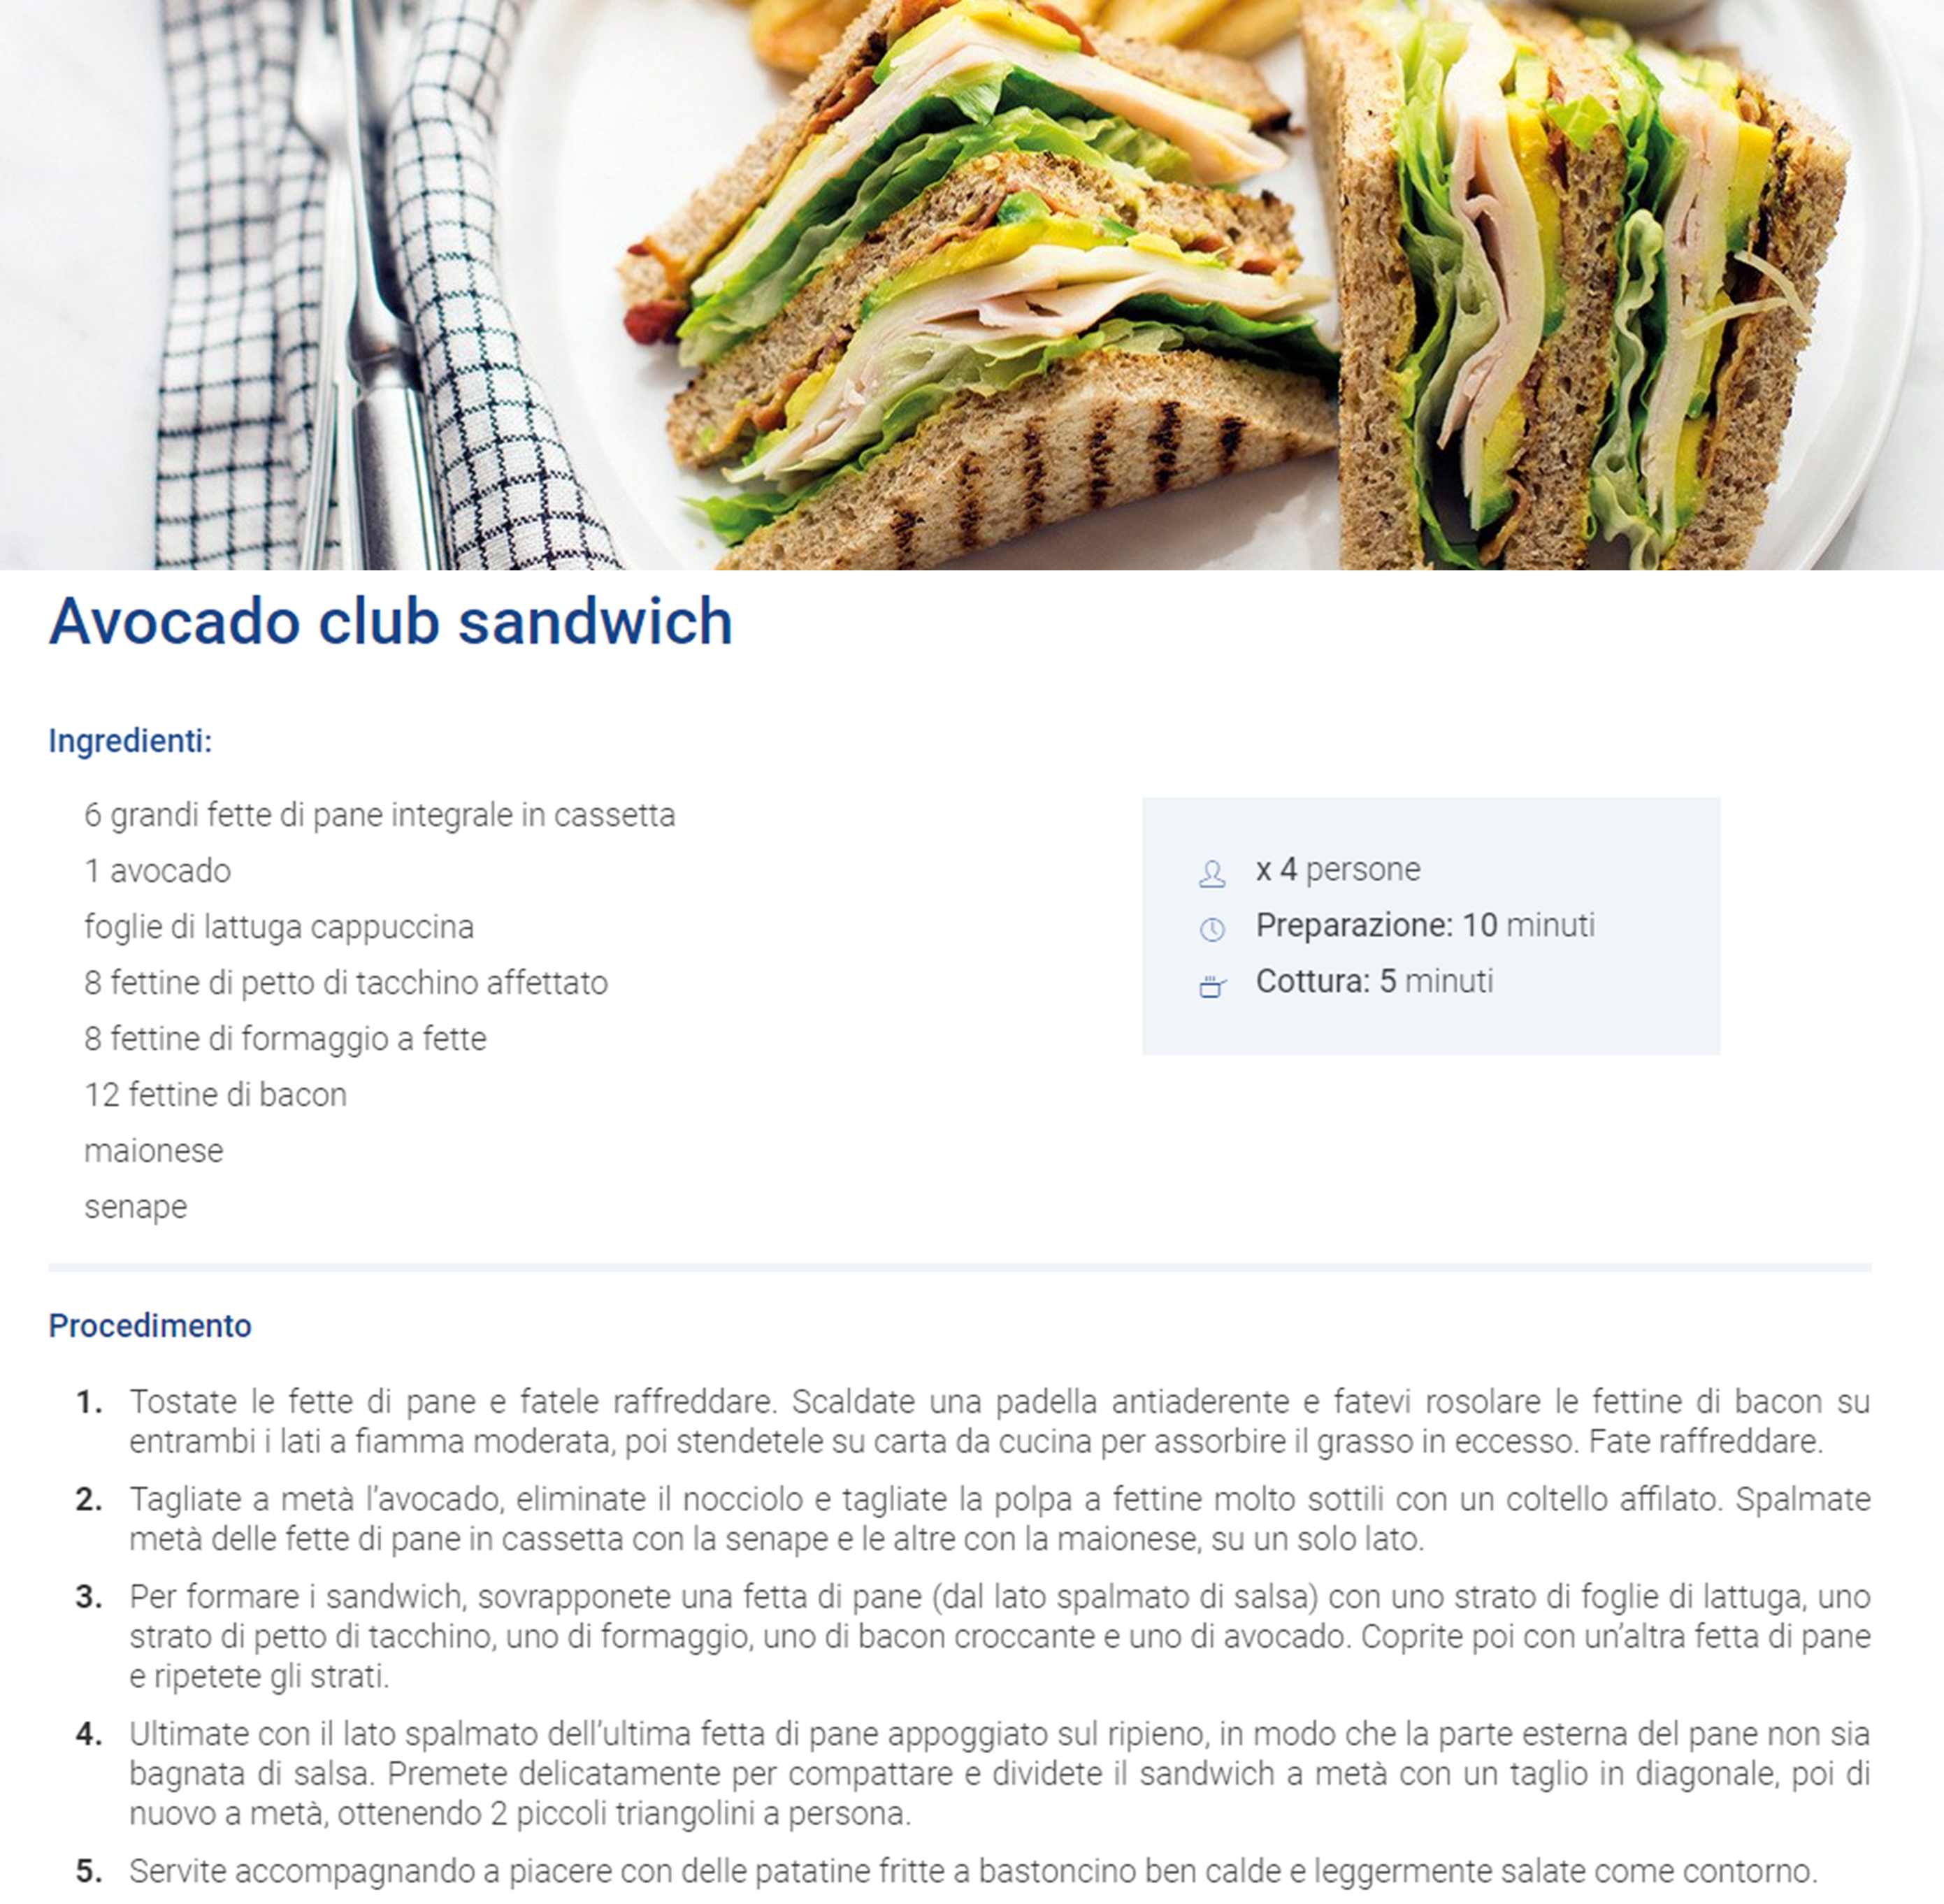 Avocado club sandwich